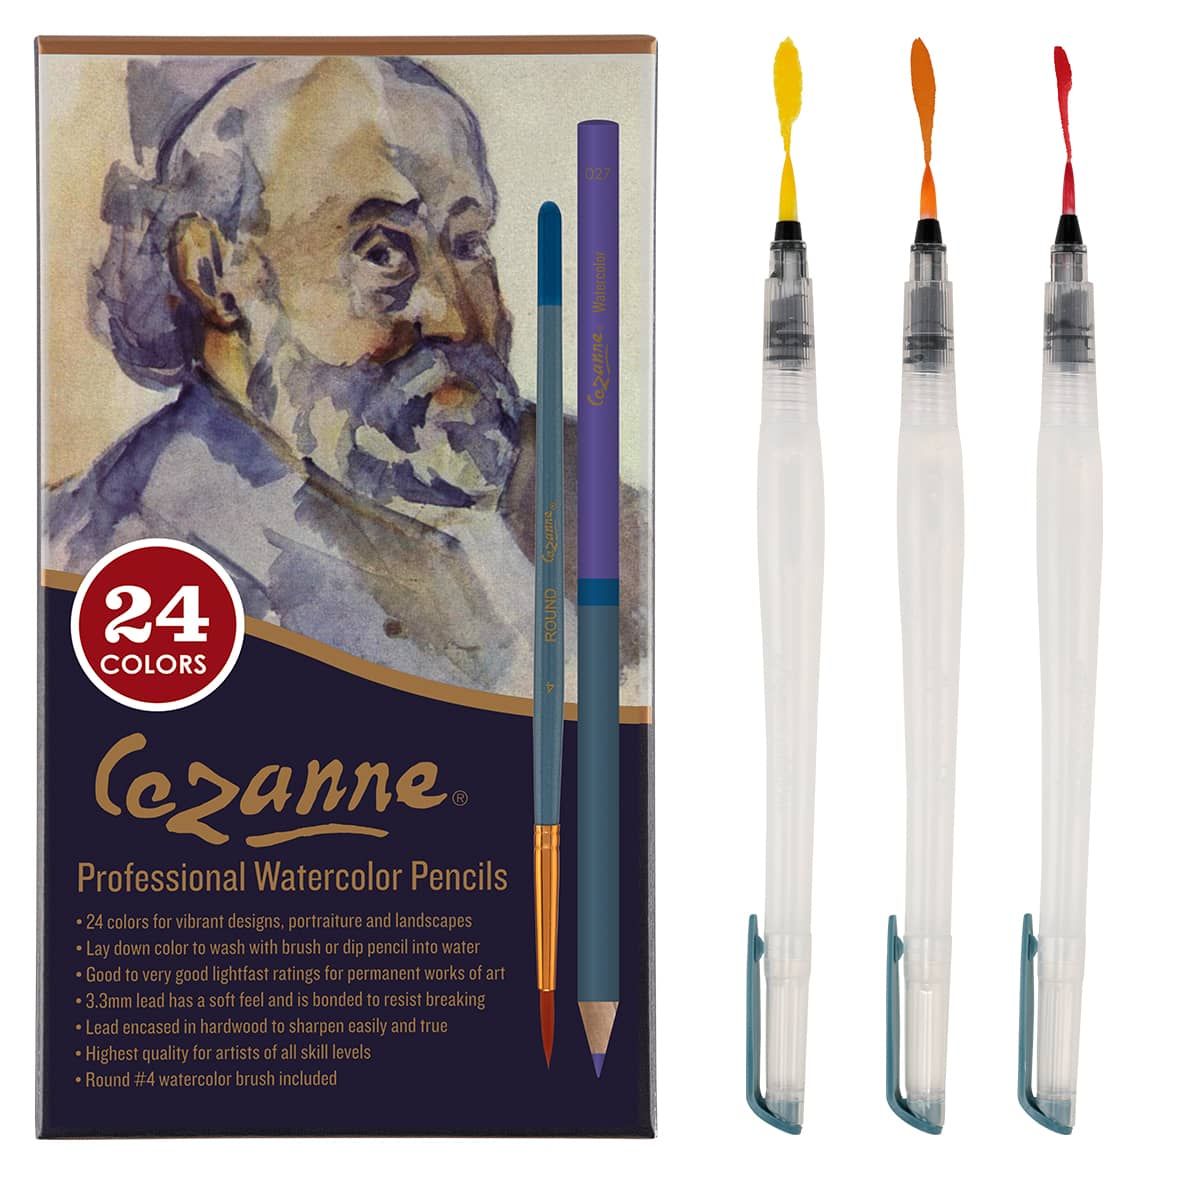 https://www.jerrysartarama.com/media/catalog/product/cache/ecb49a32eeb5603594b082bd5fe65733/c/e/cezanne-watercolor-pencil-set-24-aquastroke-pro-set-3-combo-90153g_1.jpg